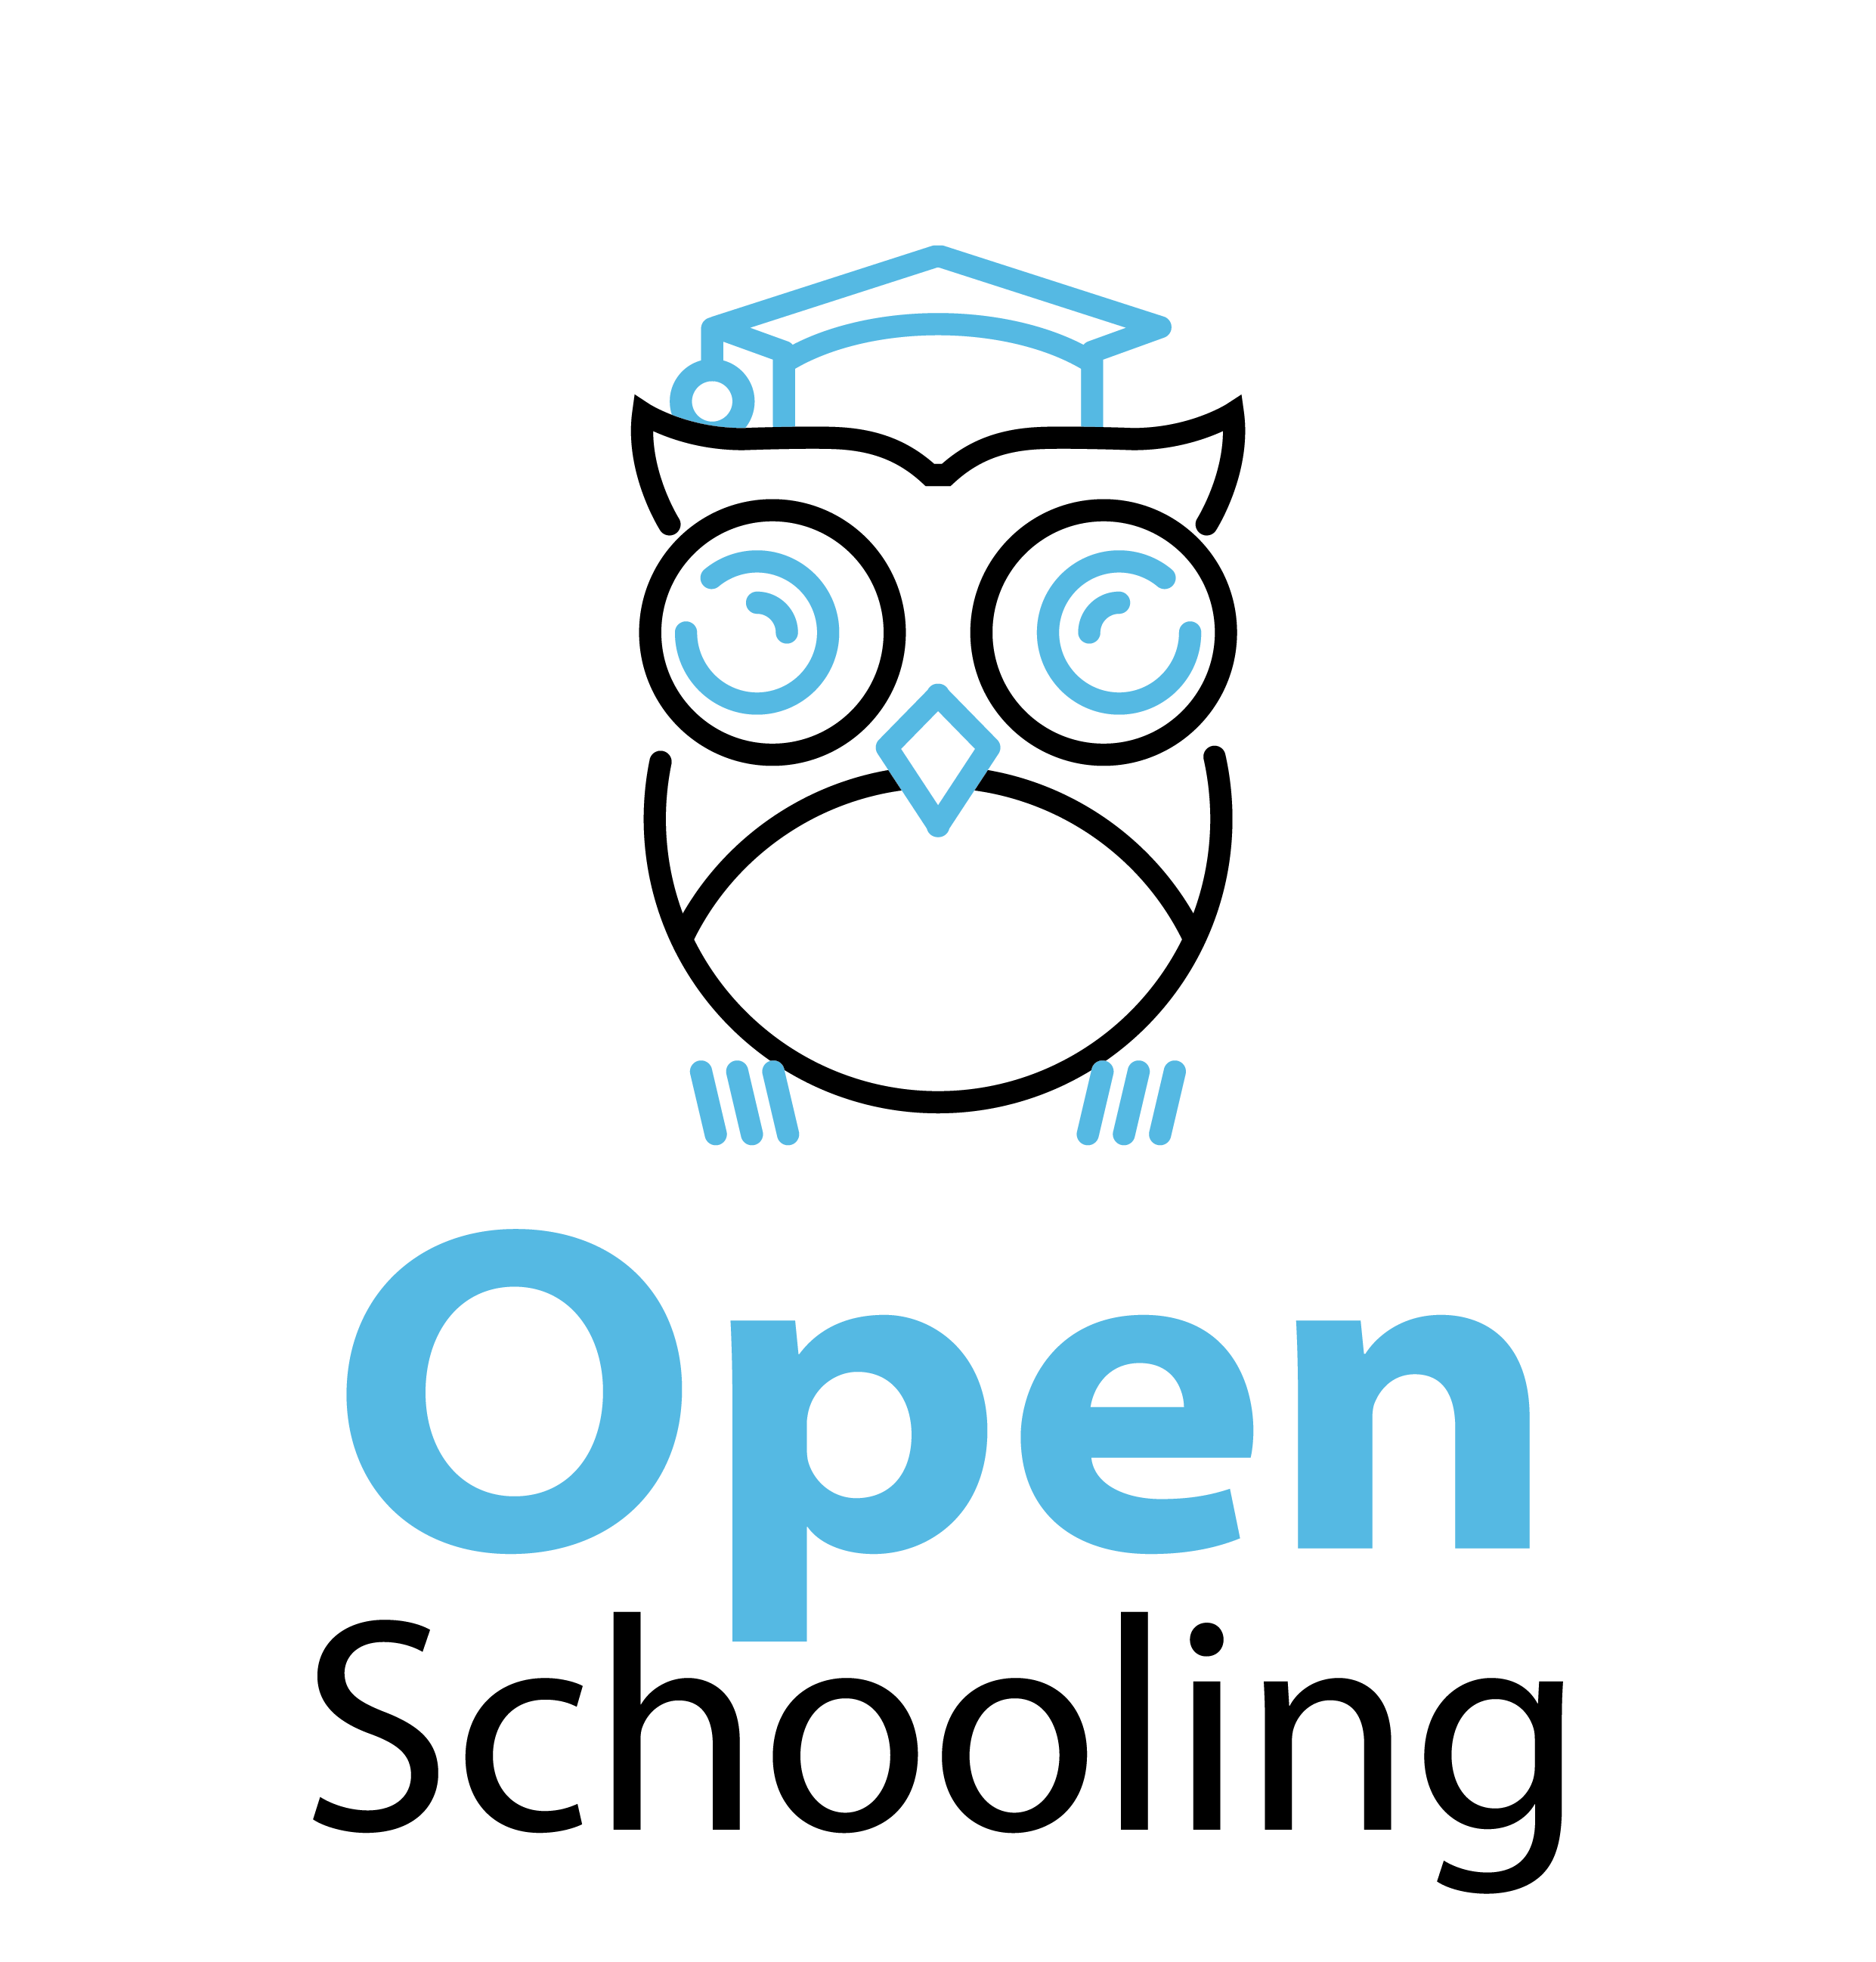 OpenSchooling